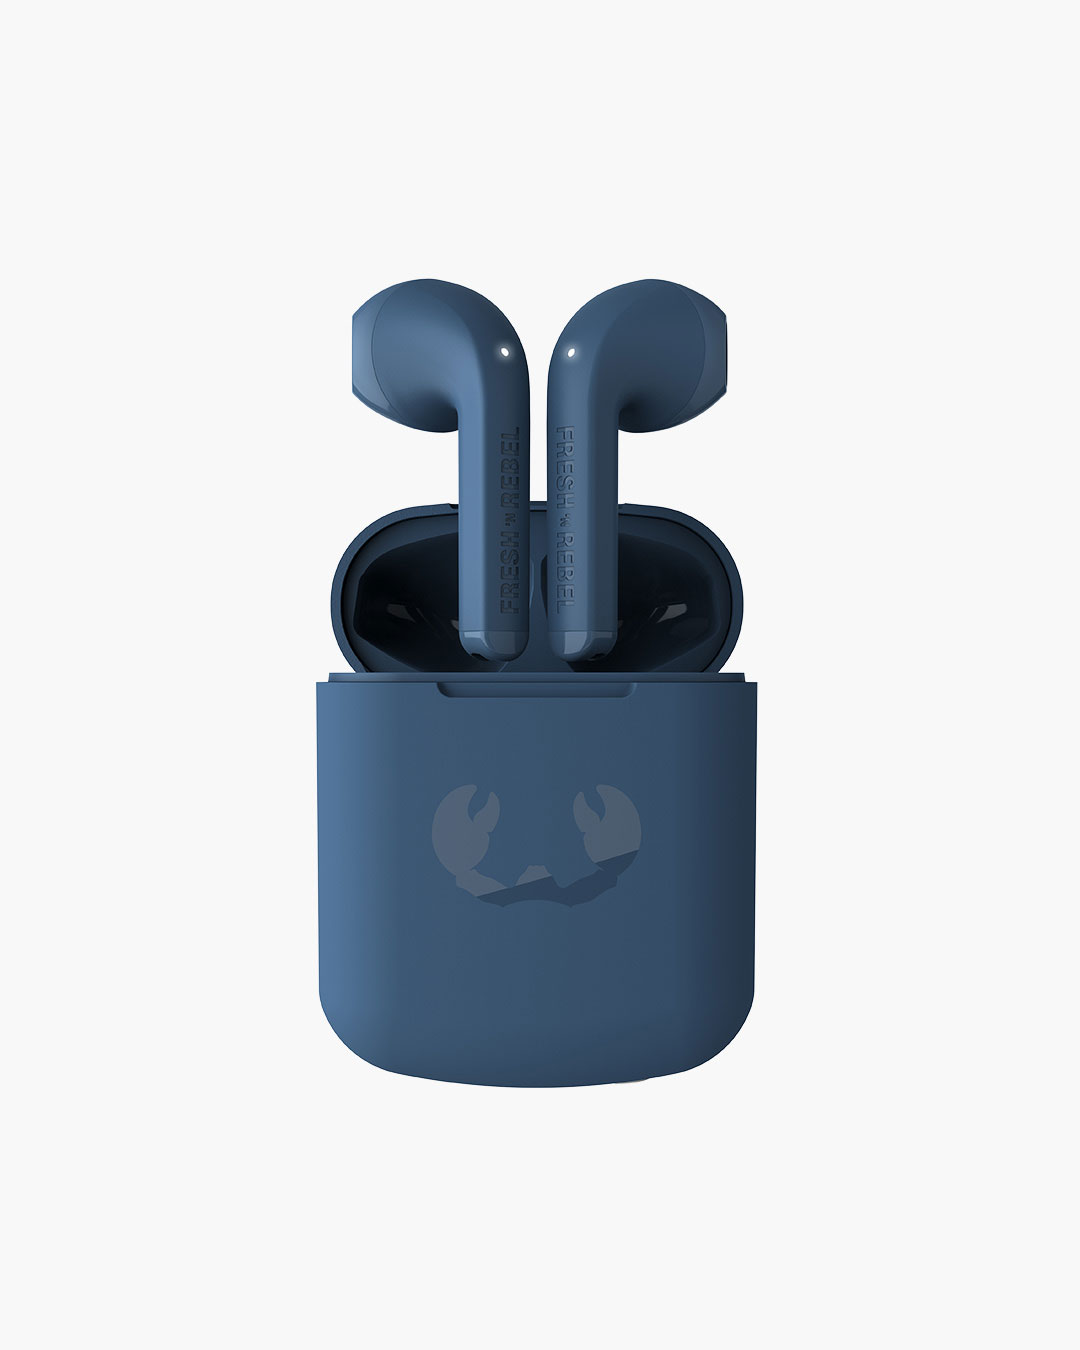 Fresh 'n Rebel - Twins 1 - True Wireless In-ear headphones - Steel Blue